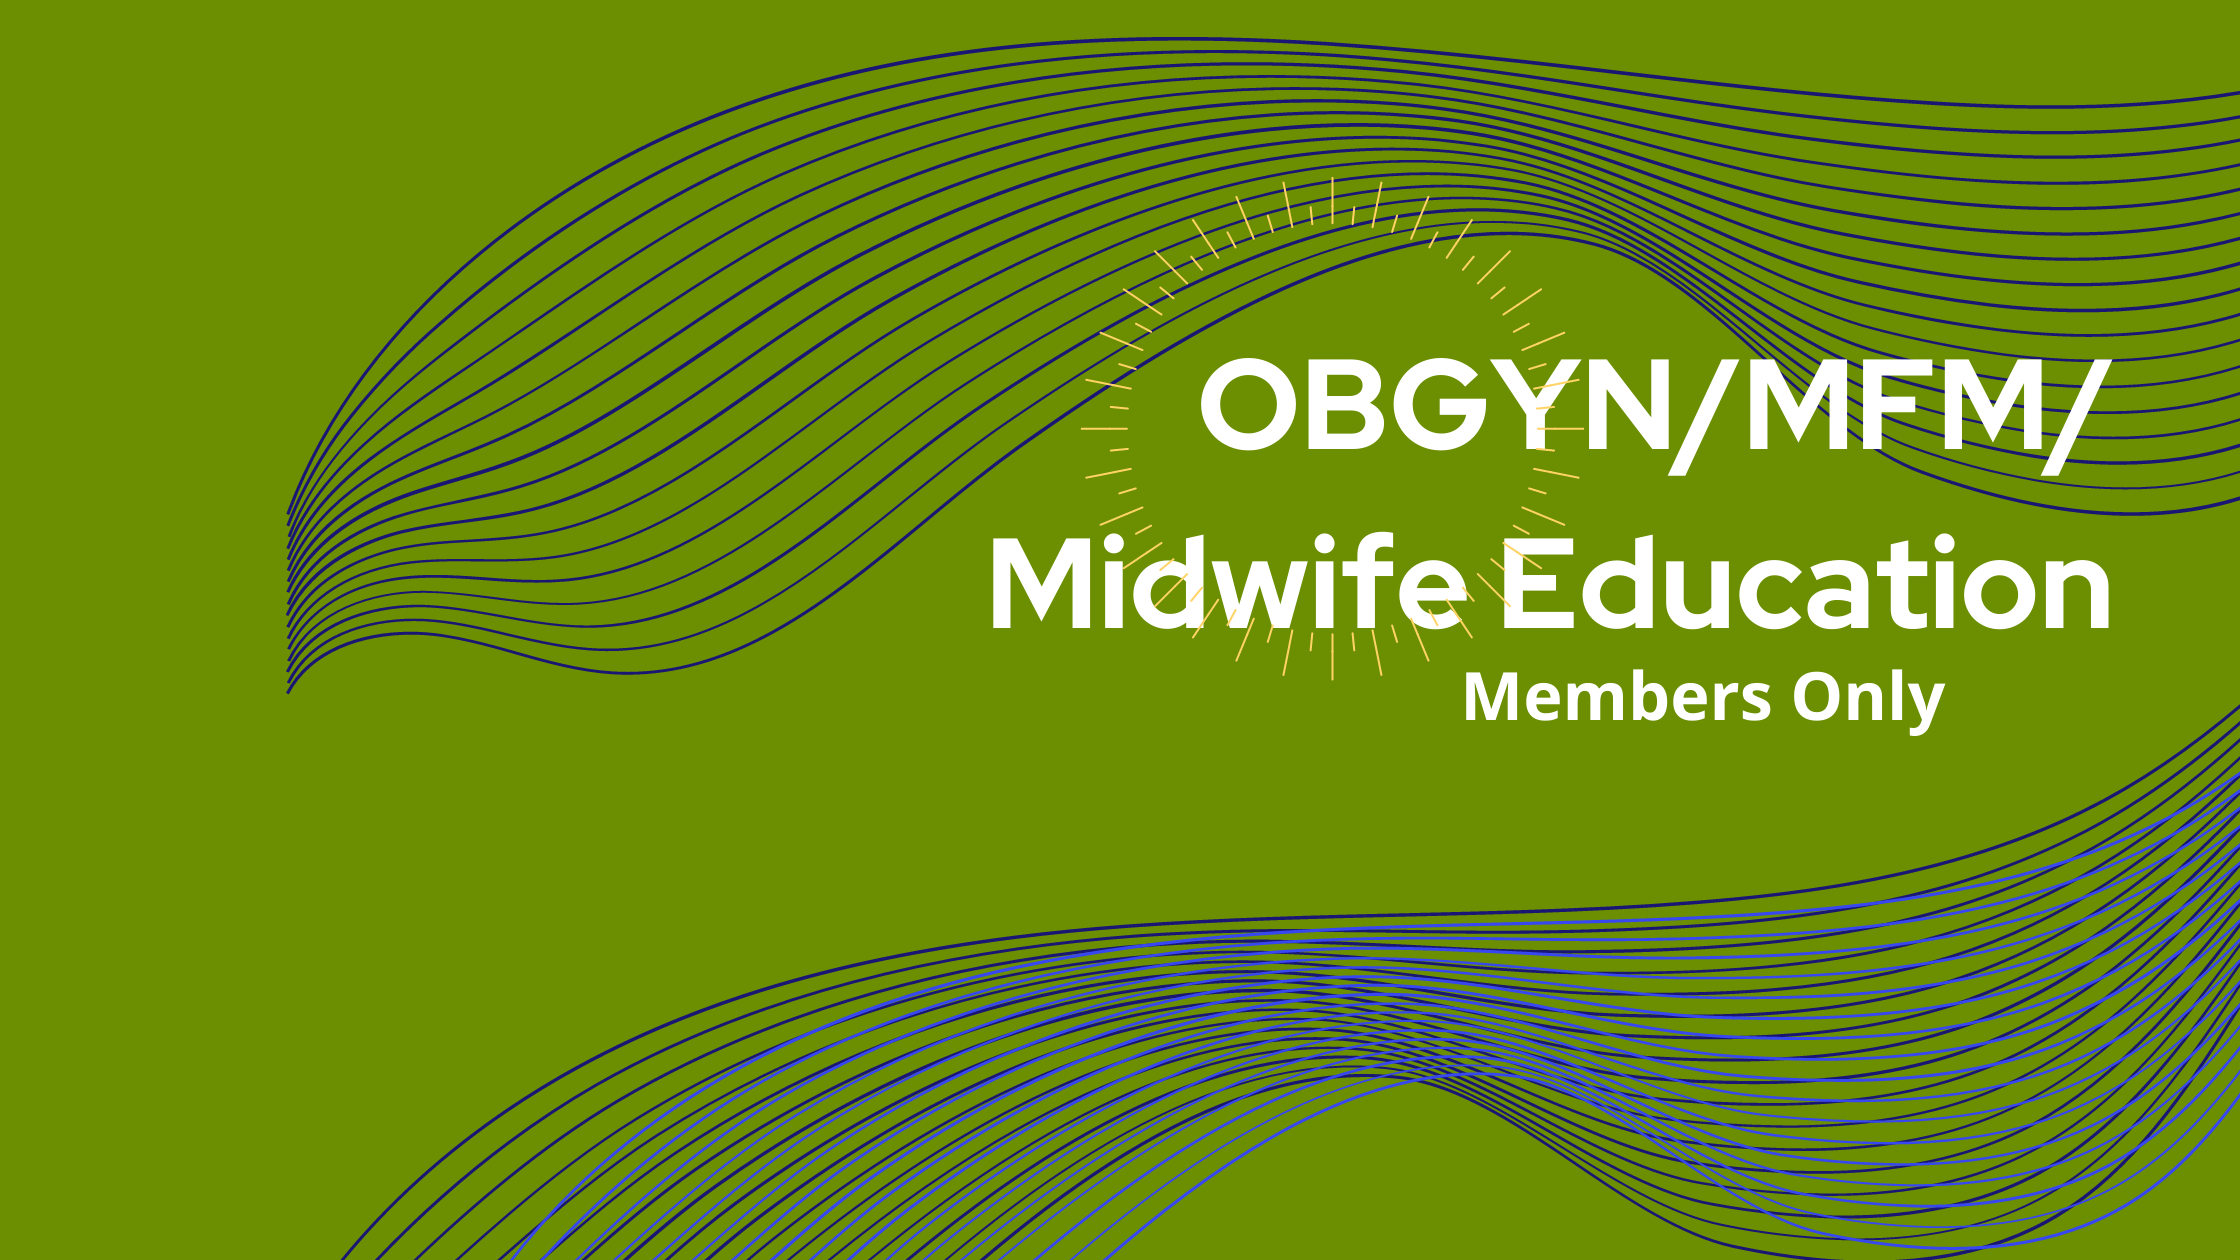 OB-GYN MFM Midwife Education